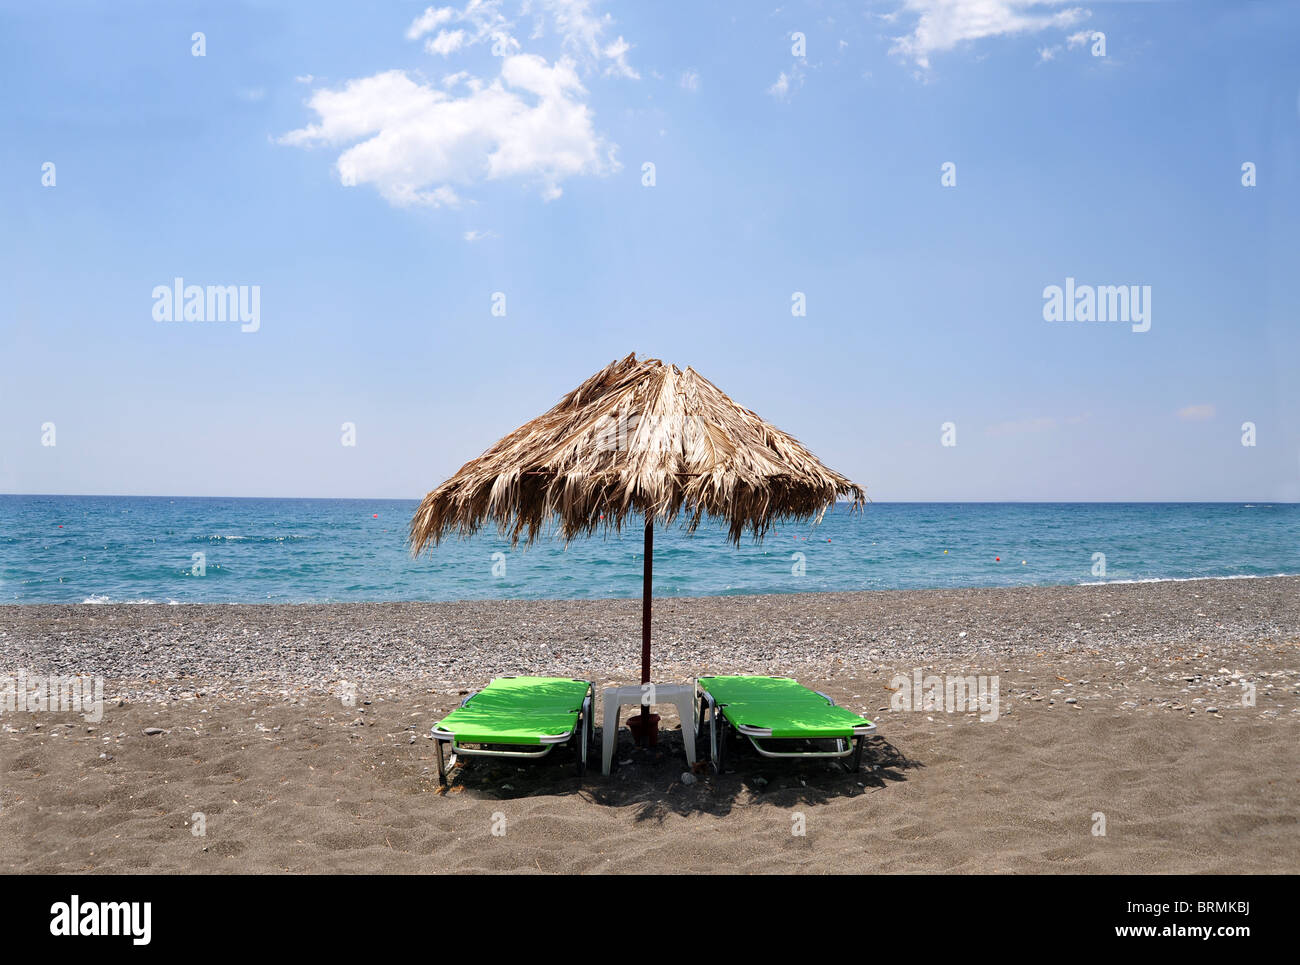 Solo palm ombrellone sulla spiaggia con due sedie a sdraio. Immagine presa a Mirtos nel sud di Creta, Grecia Foto Stock